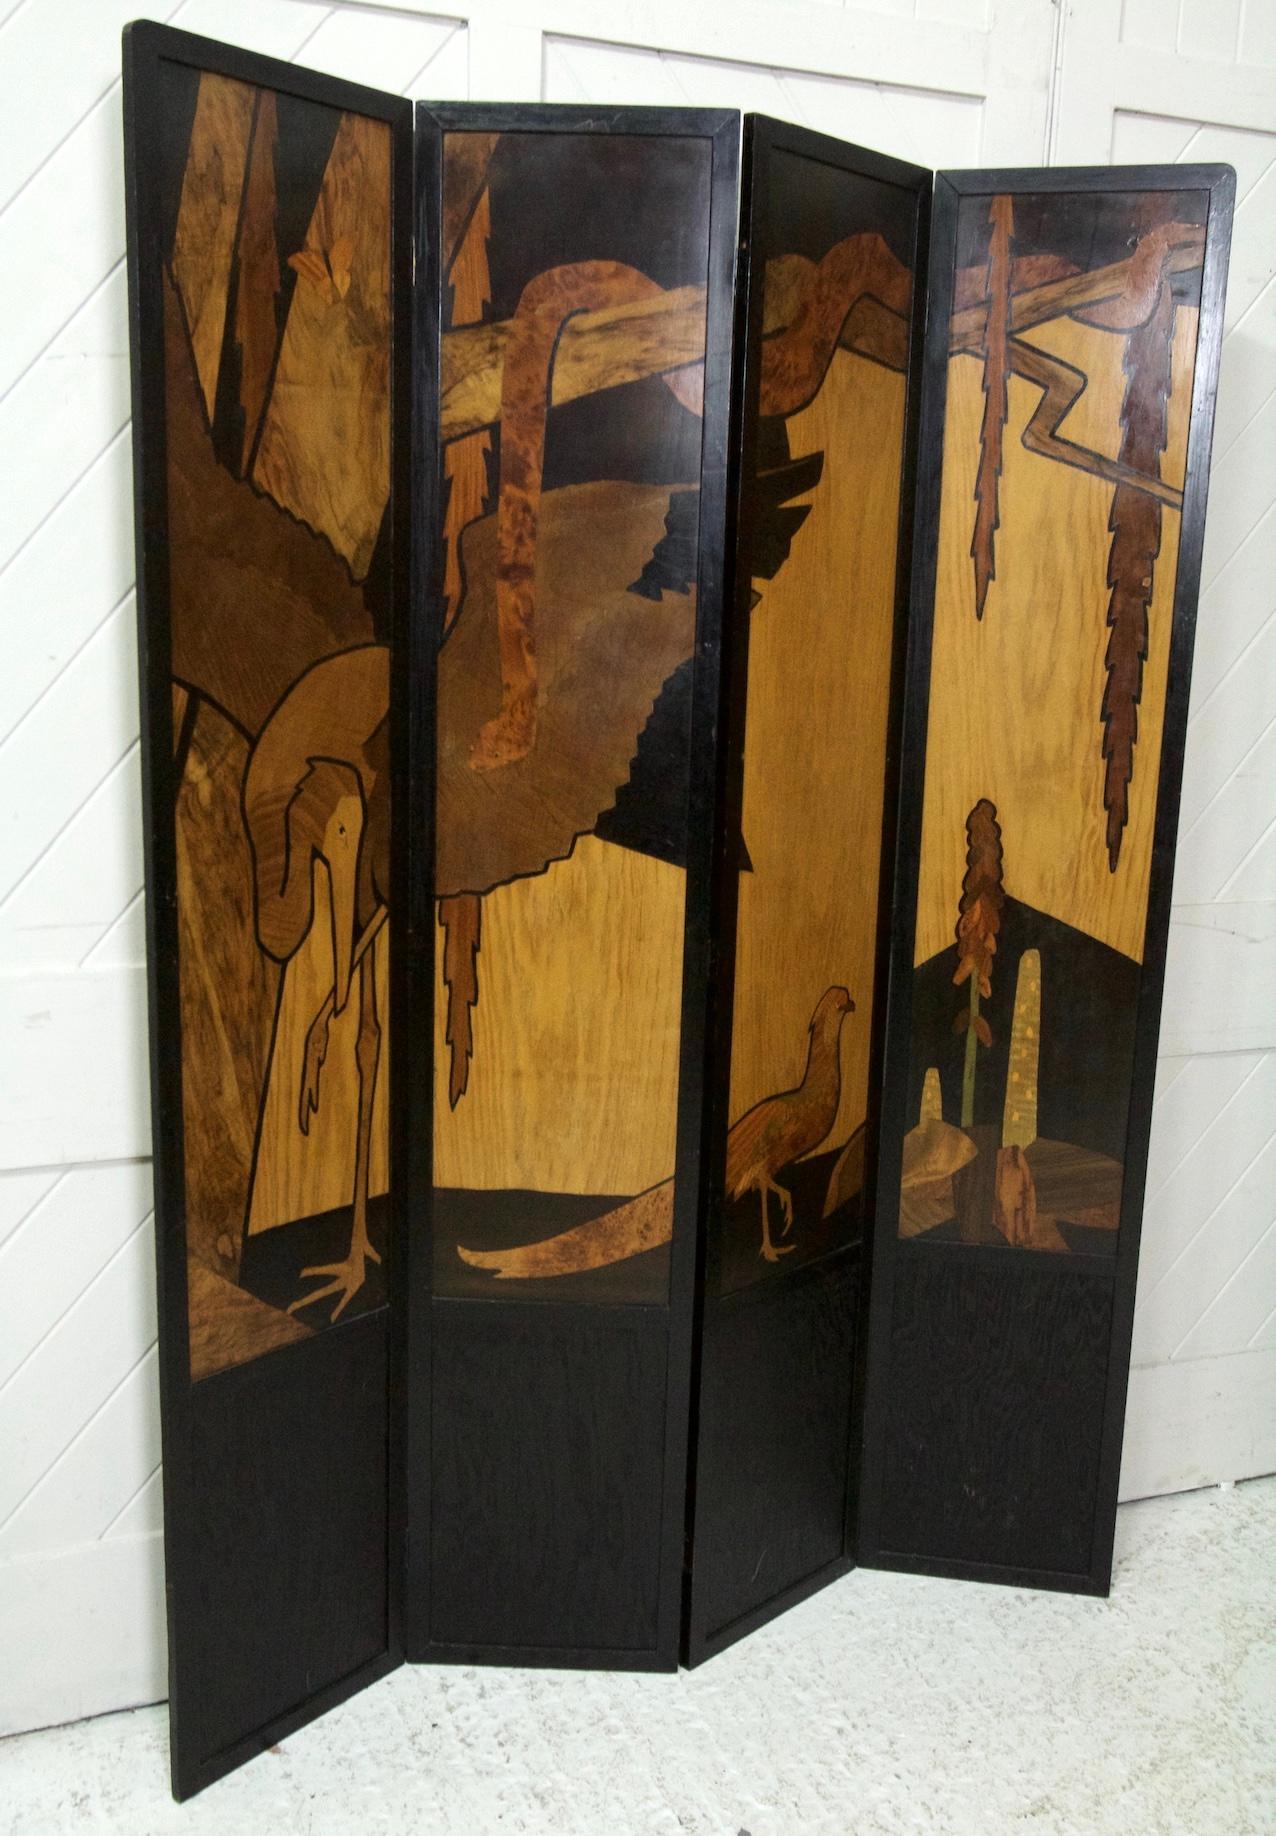 Ein extrem seltener vierfacher Holzintarsienschirm
DER DSCHUNGEL
Entworfen von W A Chase 
Für THE ROWLEY GALLERY
Ausgestellt im Jahr 1924
Maße: Höhe 190 cm volle Breite 140cm (jede Platte 35cm breit)

Diese Leinwand ist ein wunderbares